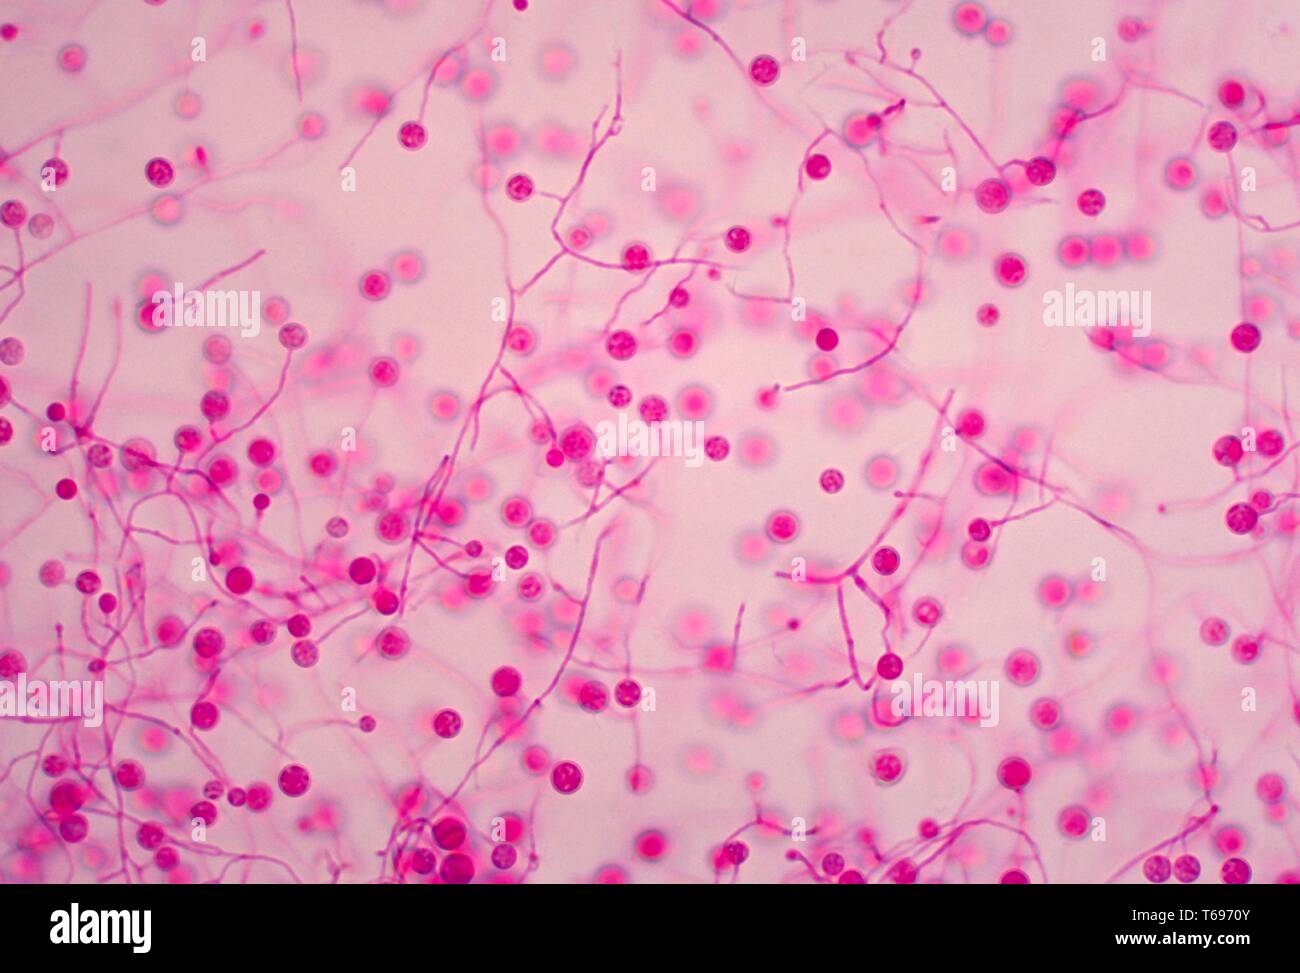 Photomicrograph der Jamaikanischen isolieren glatte macroconidia der dimorphic Pilz Histoplasma capsulatum, 1968. Bild mit freundlicher Genehmigung Zentren für Krankheitskontrolle und Prävention (CDC)/Dr Libero Ajello. () Stockfoto